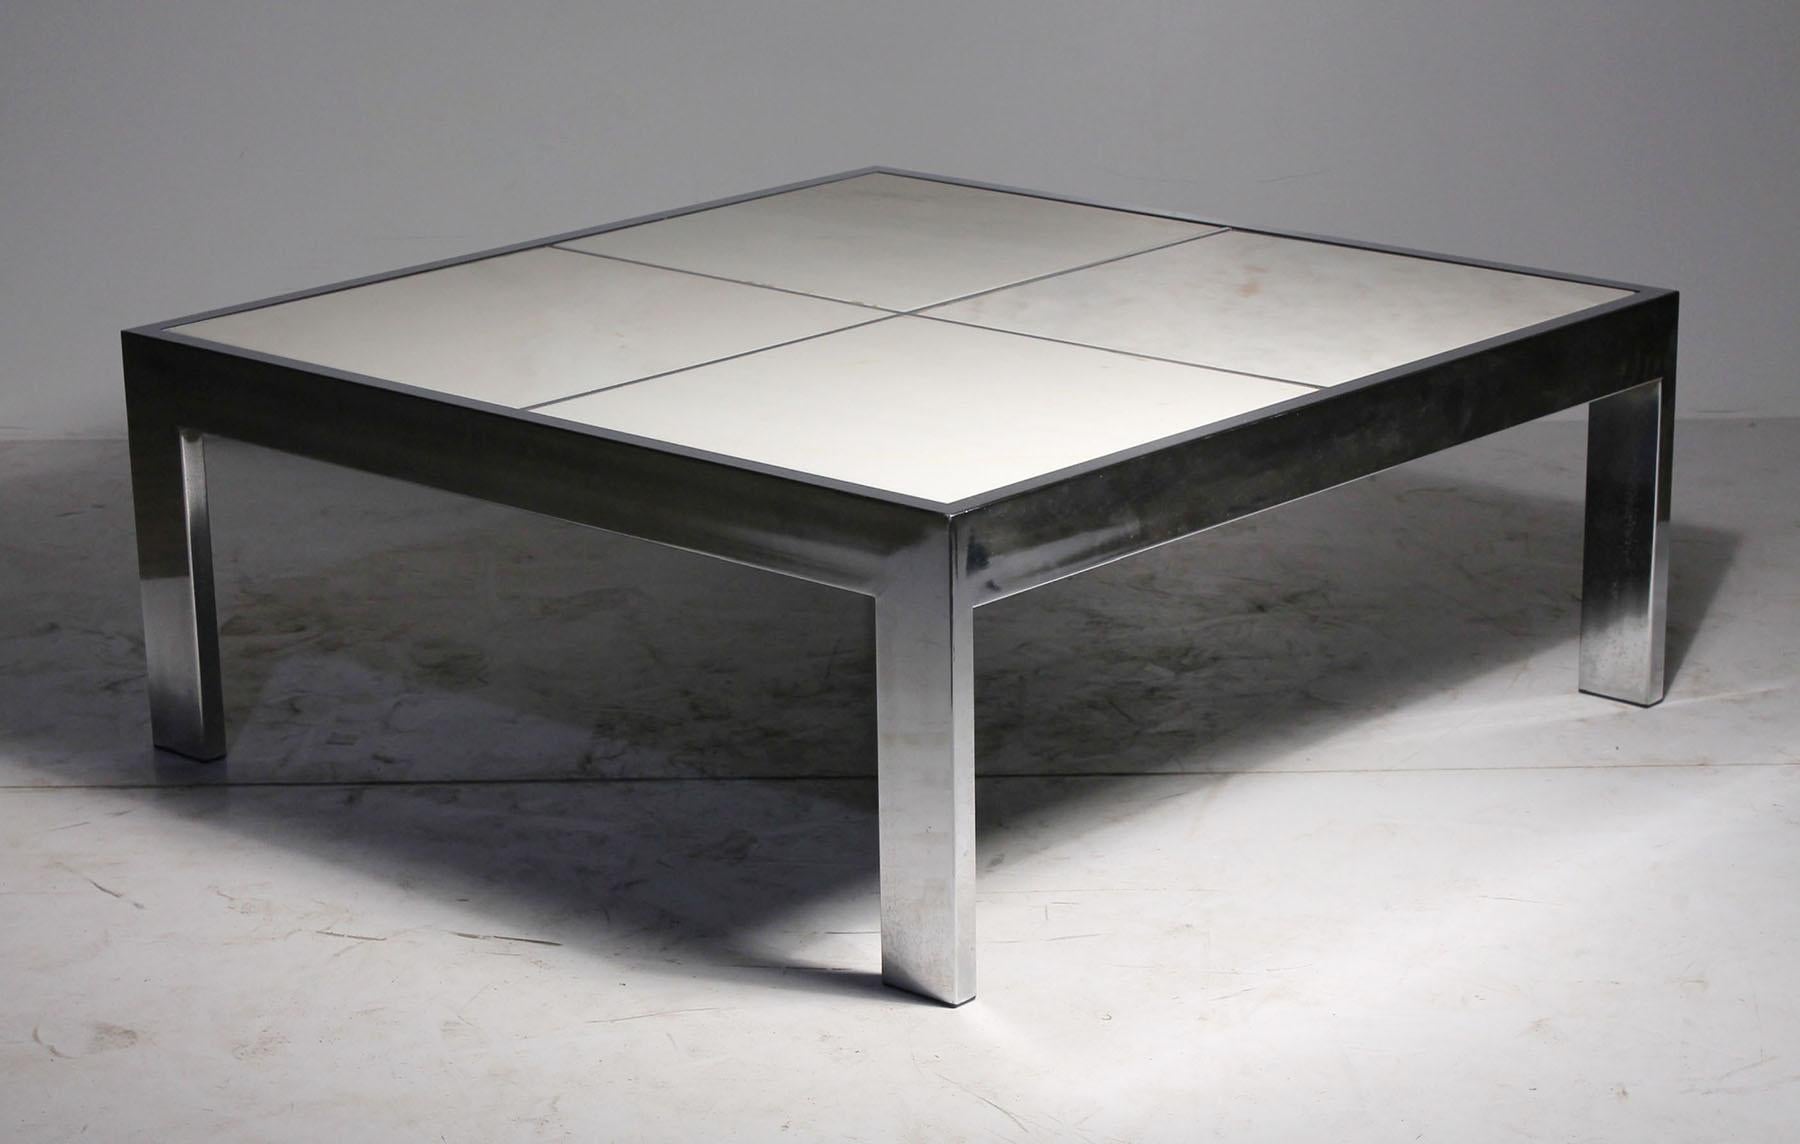 DIA Couchtisch mit (abnehmbaren/auswechselbaren) quadratischen Marmorfliesenplatten. Dieser Tisch lässt sich mit reinweißen, schwarzen oder roten Marmorplatten ganz einfach verändern. Kommt mit den originalen weißen Marmorplatten.

einige leichte